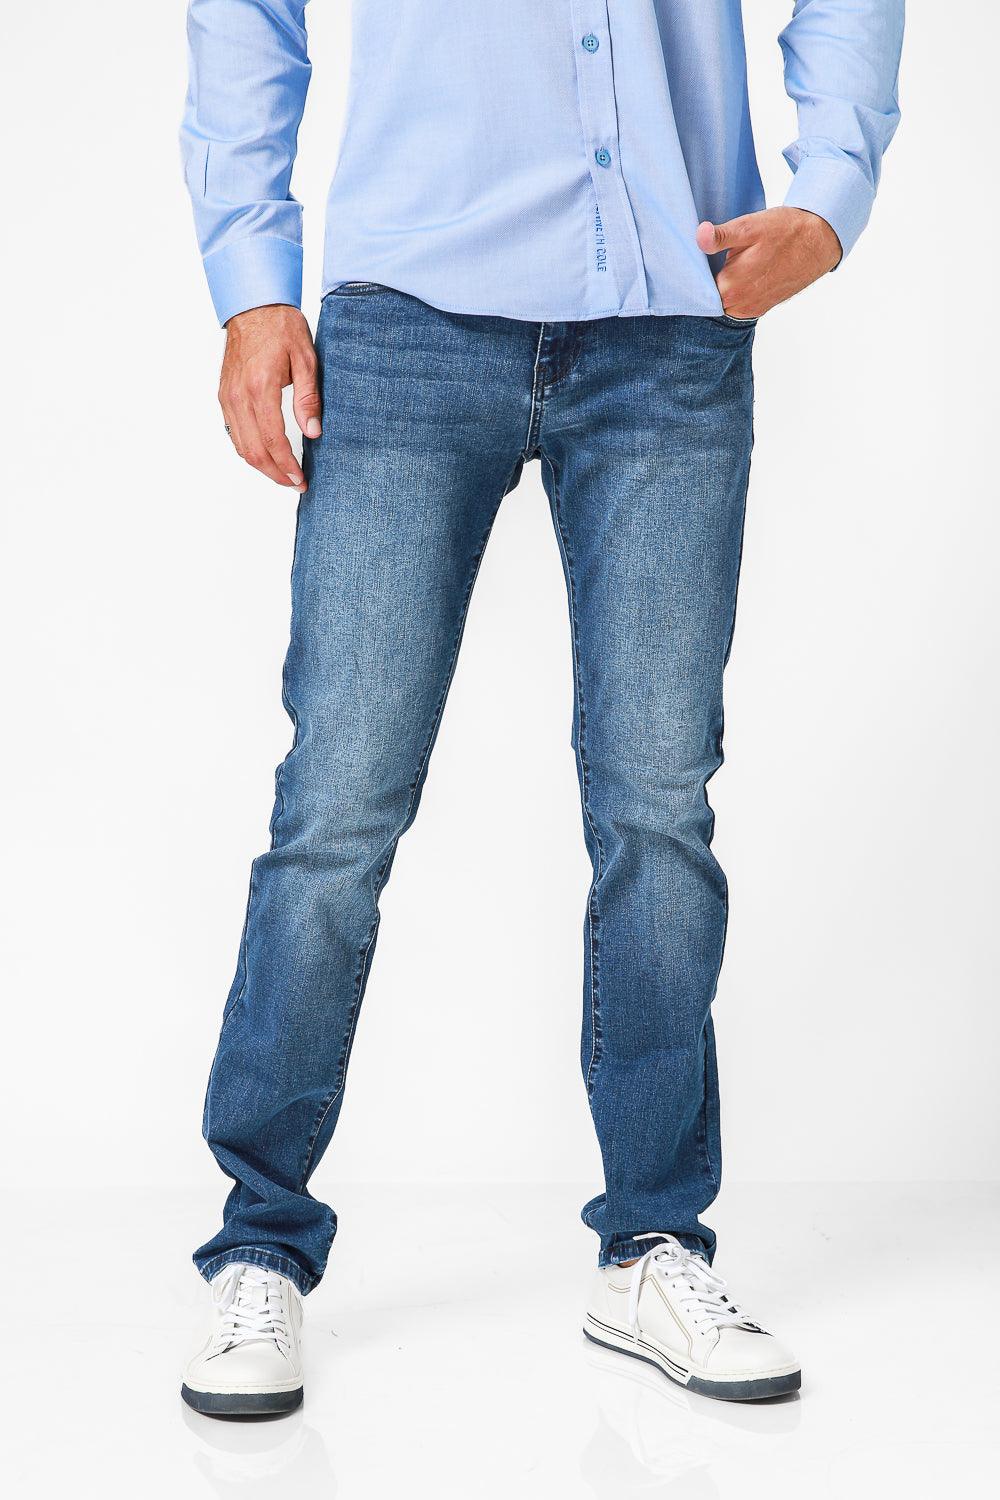 ג'ינס אינדיגו בצבע כחול - MASHBIR//365